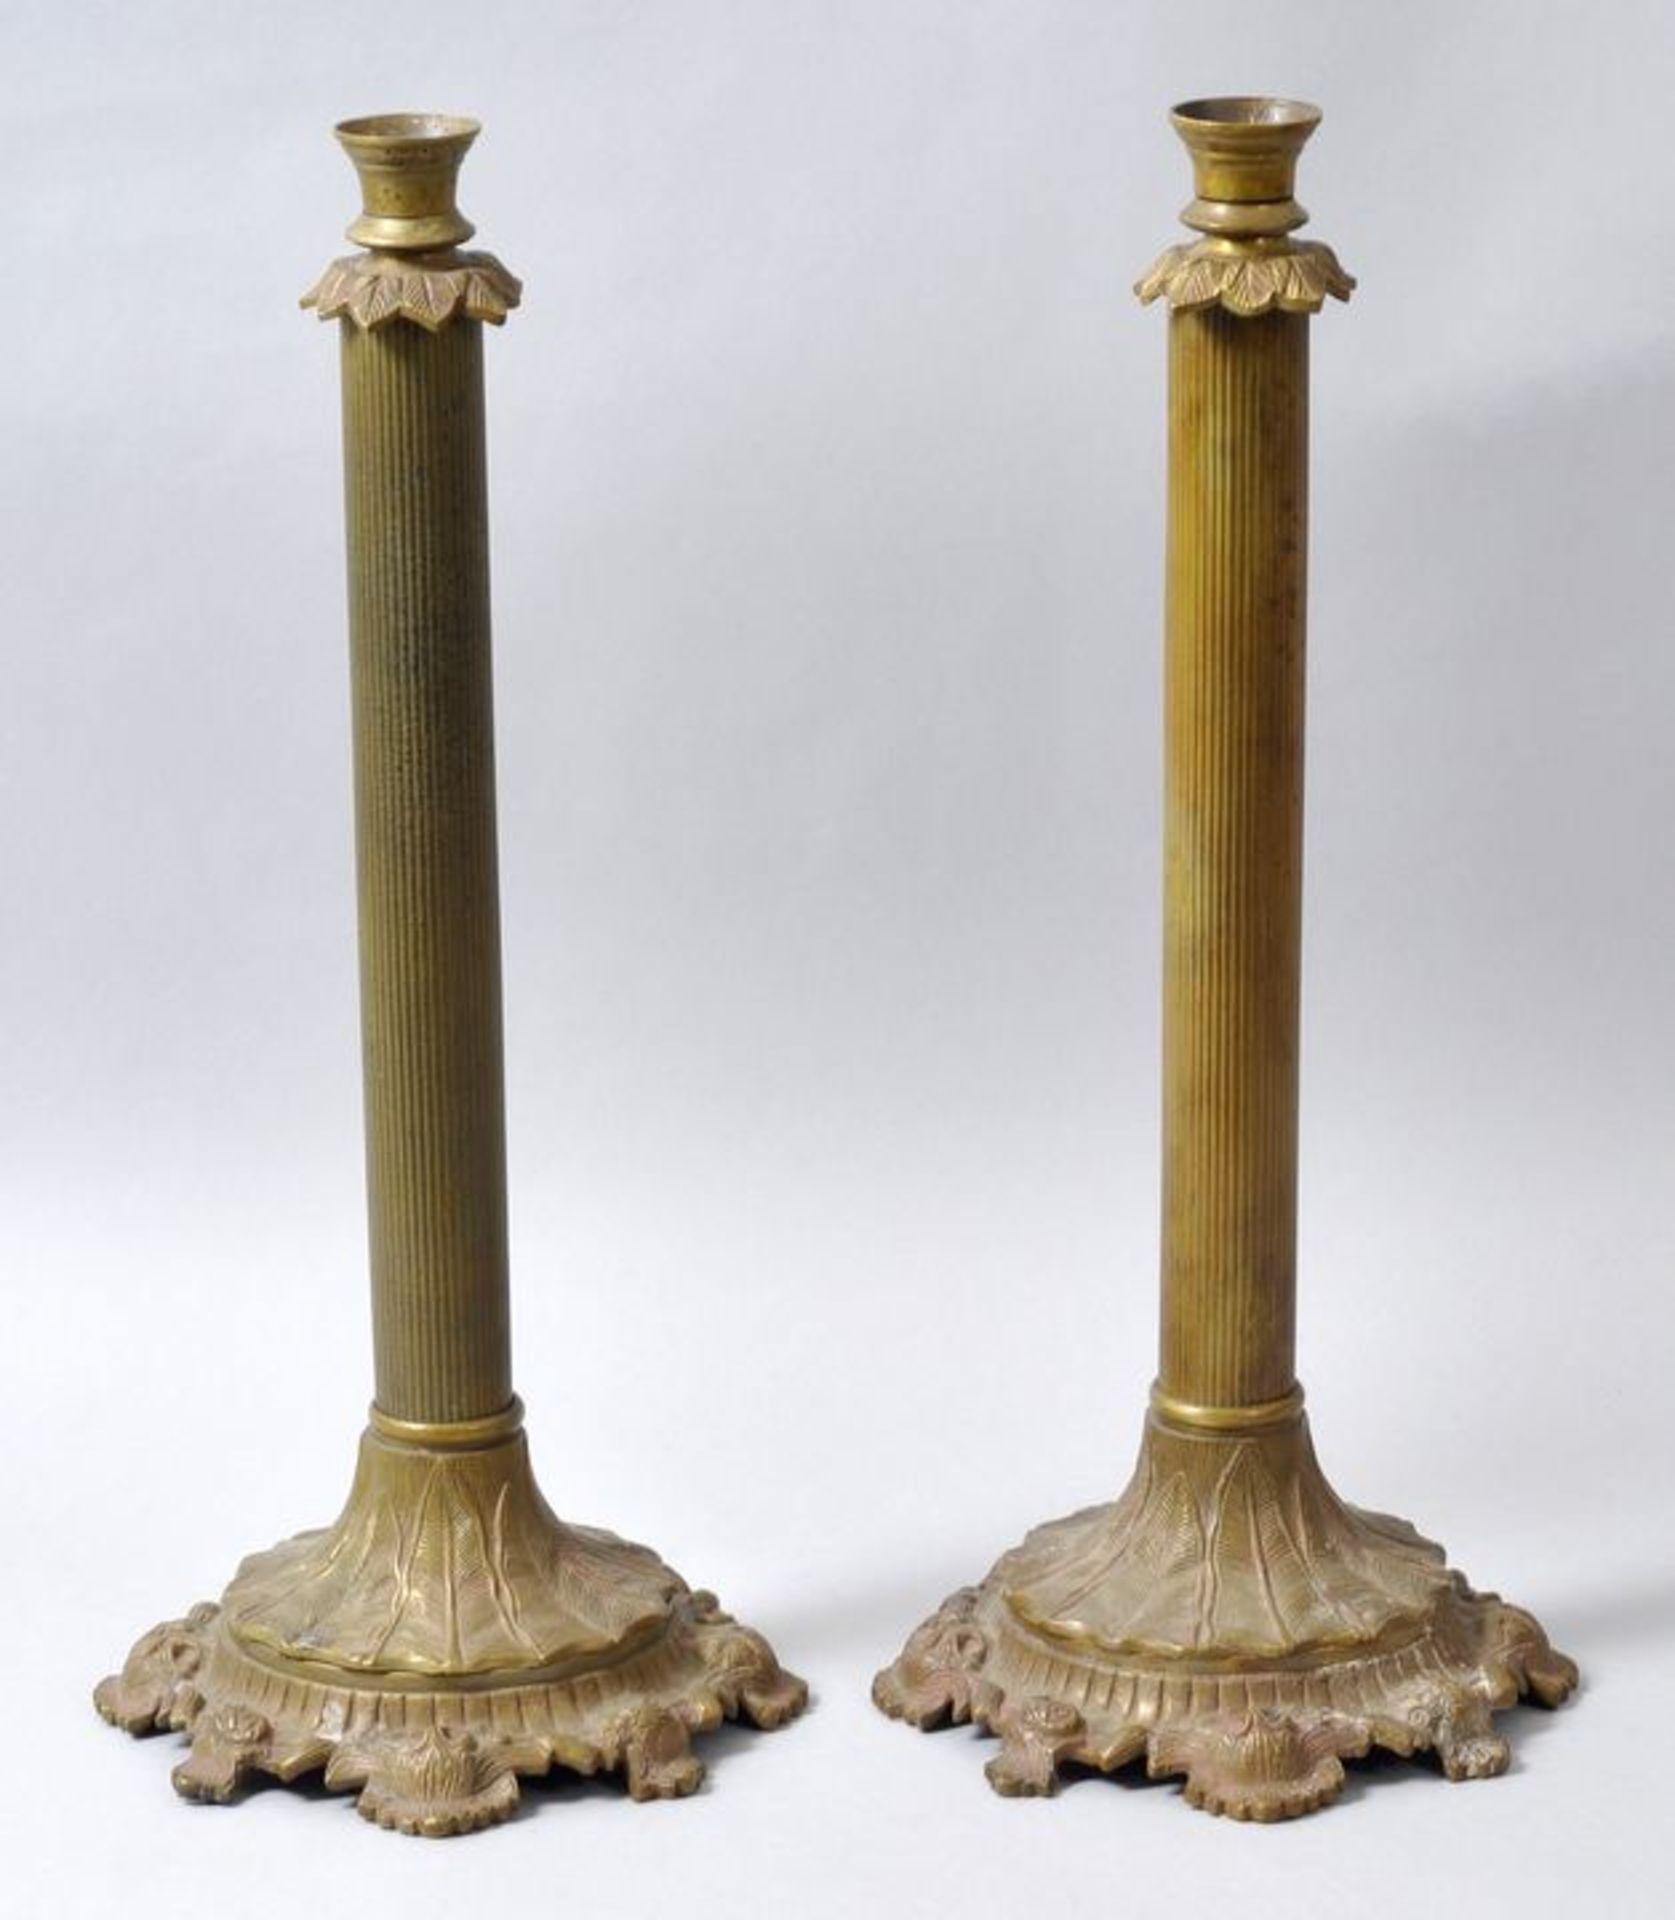 Paar Lampenfüße, EmpirestilMessing/ Bronze, gegossen, floral reliefierter Stand, kannelierter